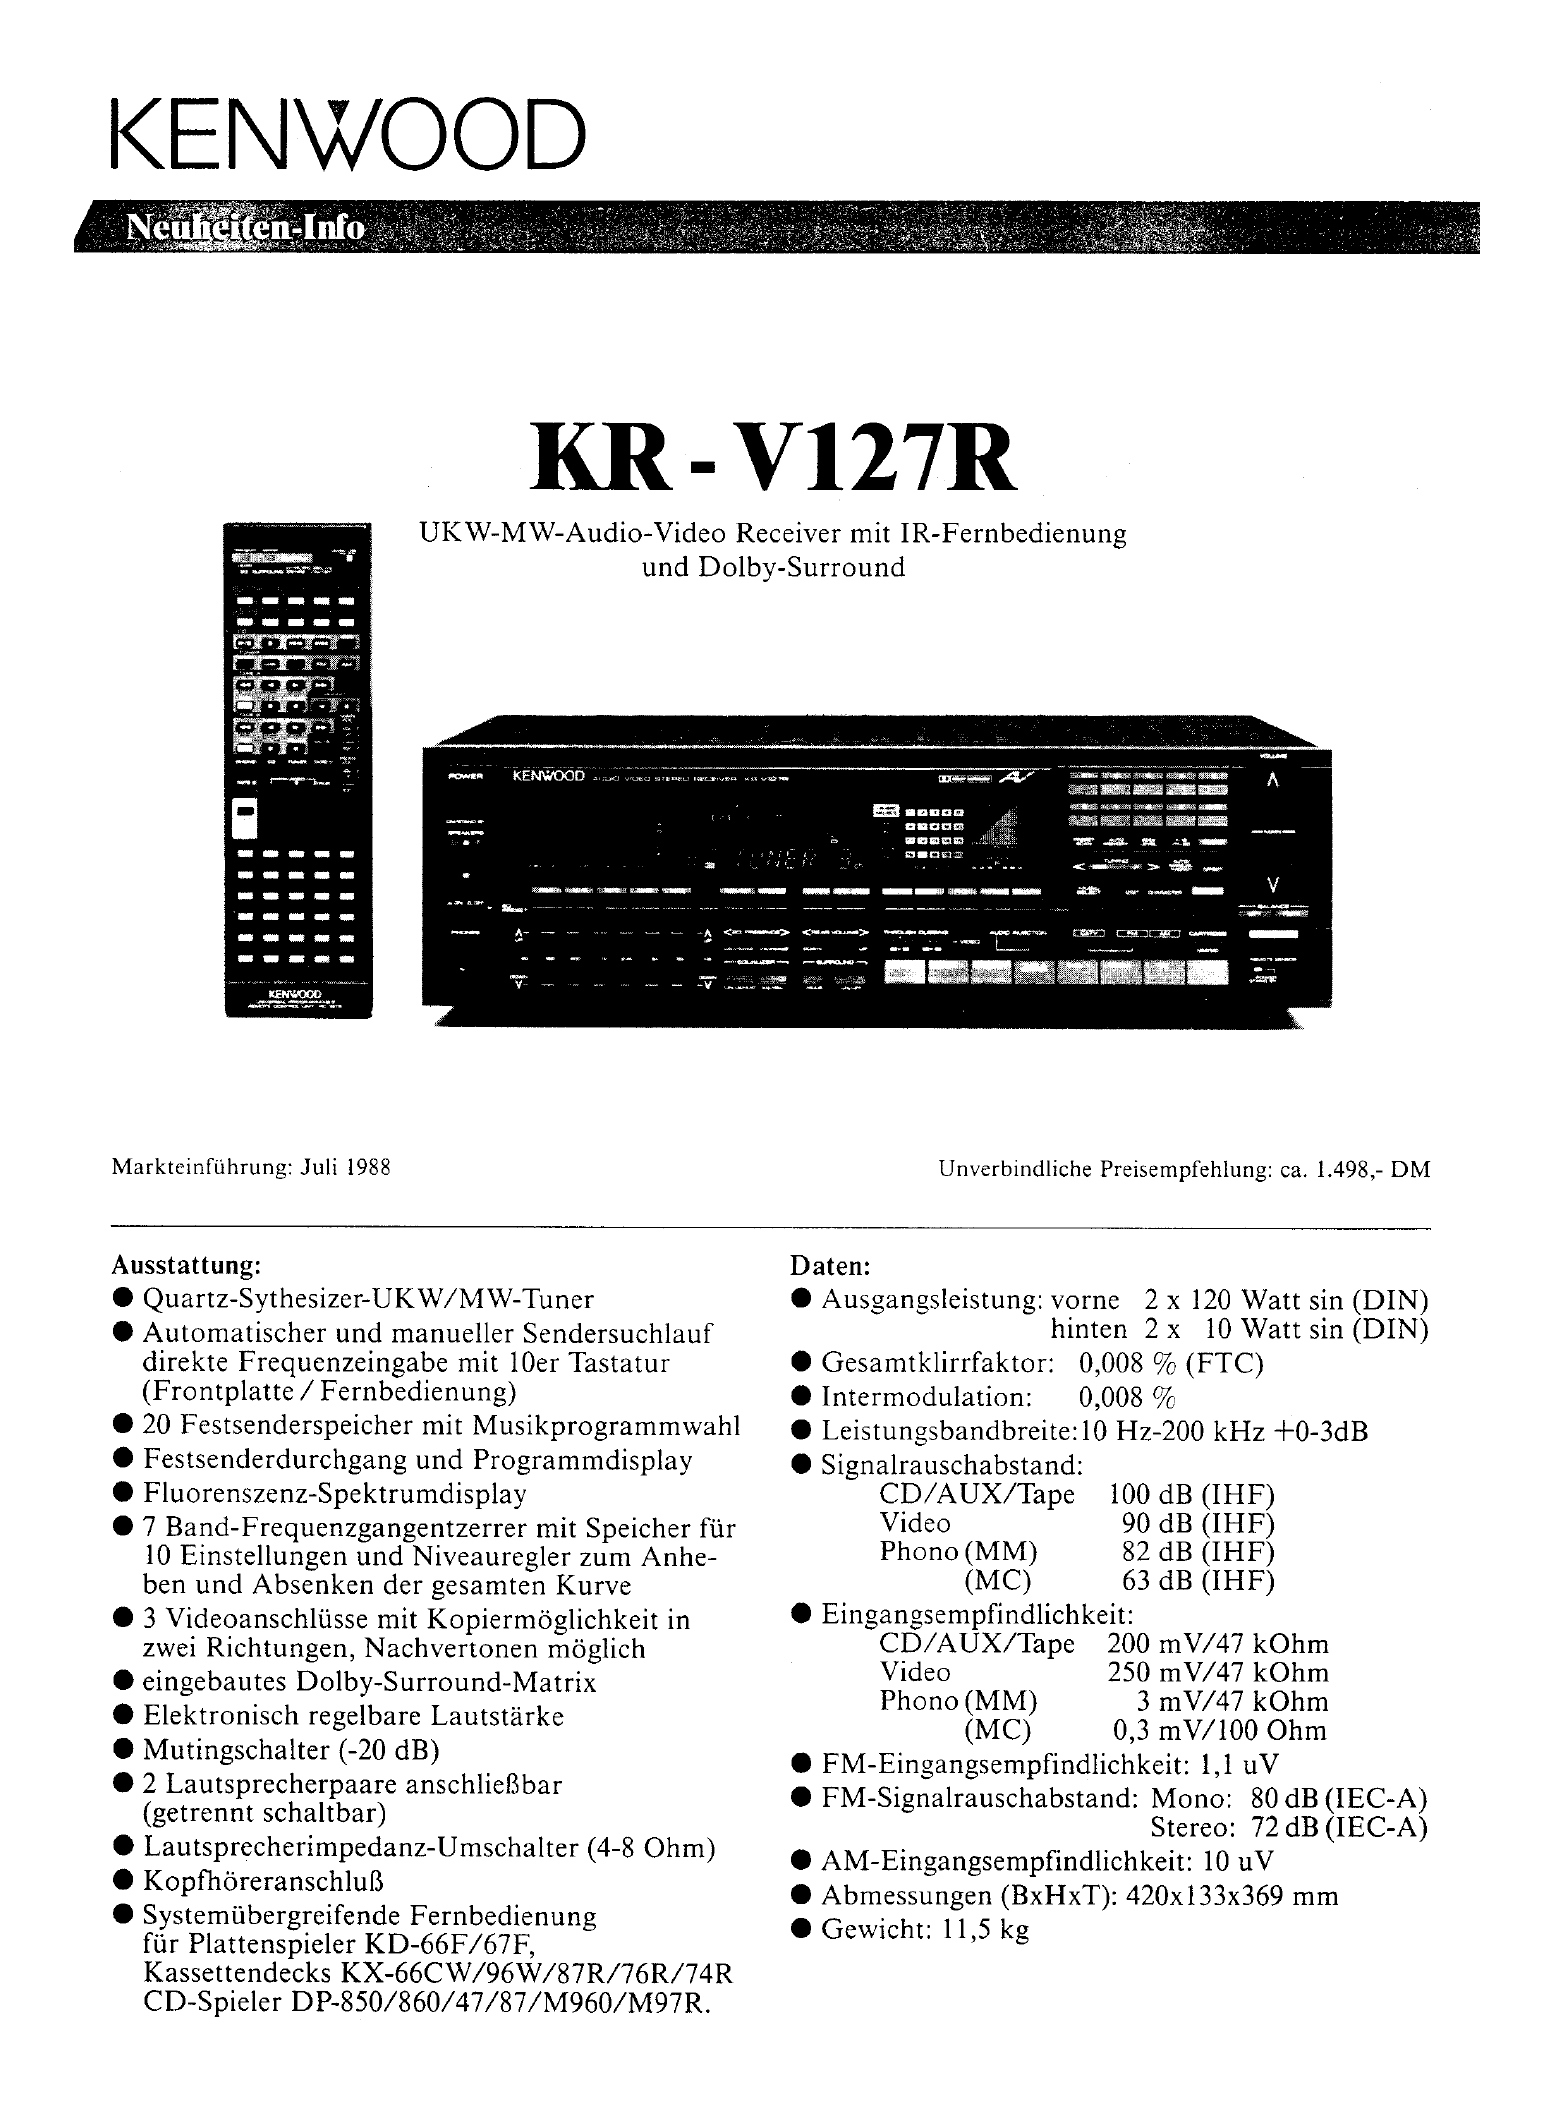 Kenwood KR-V 127 R-Prospekt-1988.jpg